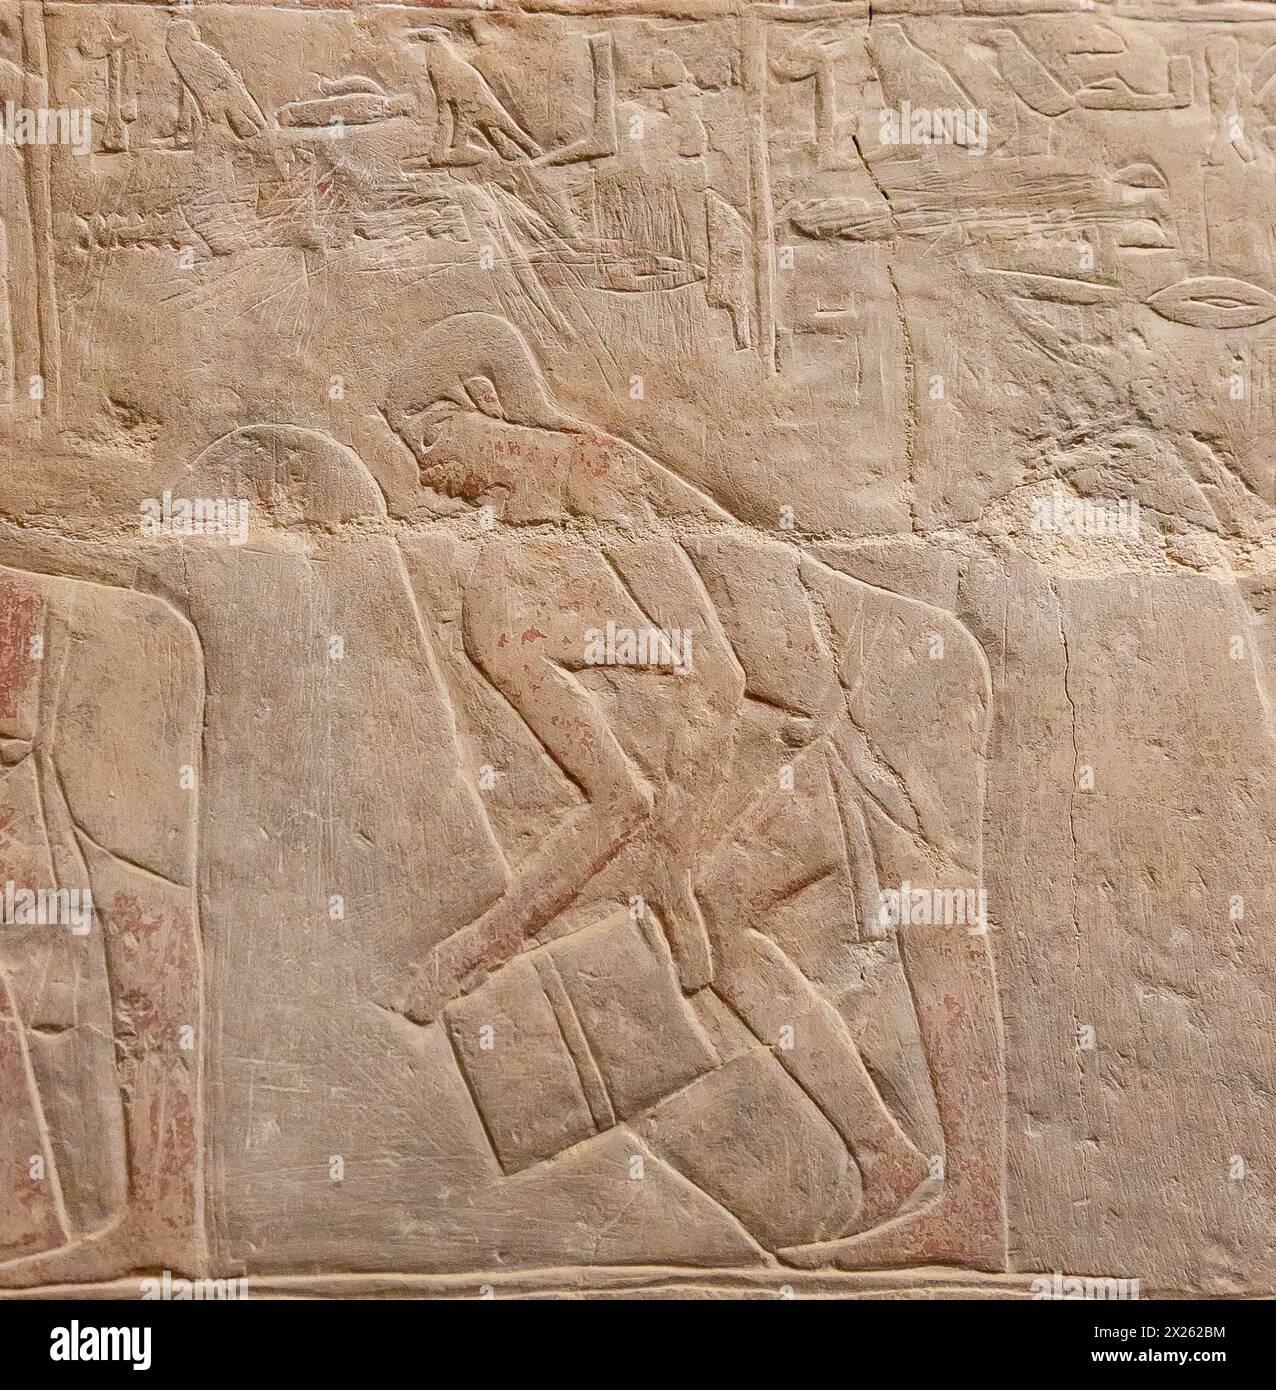 Ägypten, Sakkara, das Grab von Mereruka, Getreidekörner einsammeln. Stockfoto